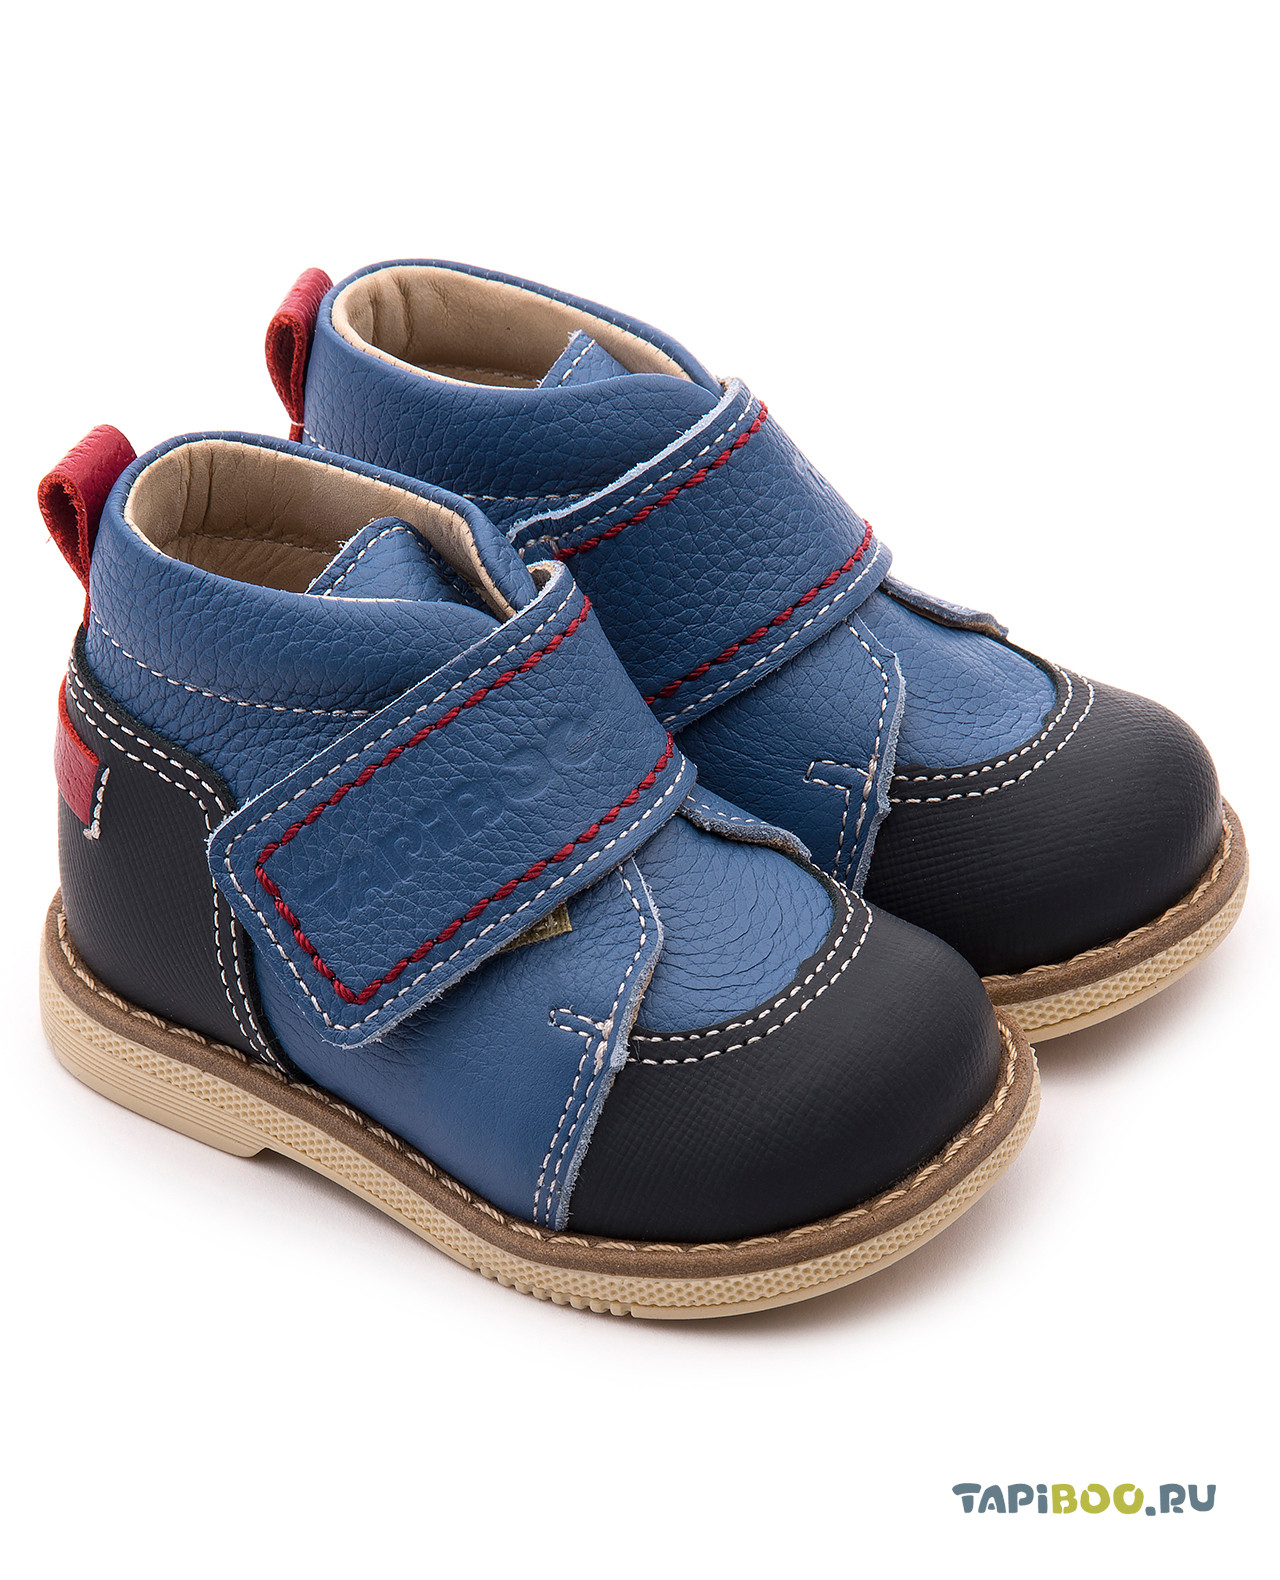 Ботинки ДЕТСКИЕ TAPIBOO ВАСИЛЁК синий (58207, 18) ботинки детские tapiboo василёк серый 71699 21